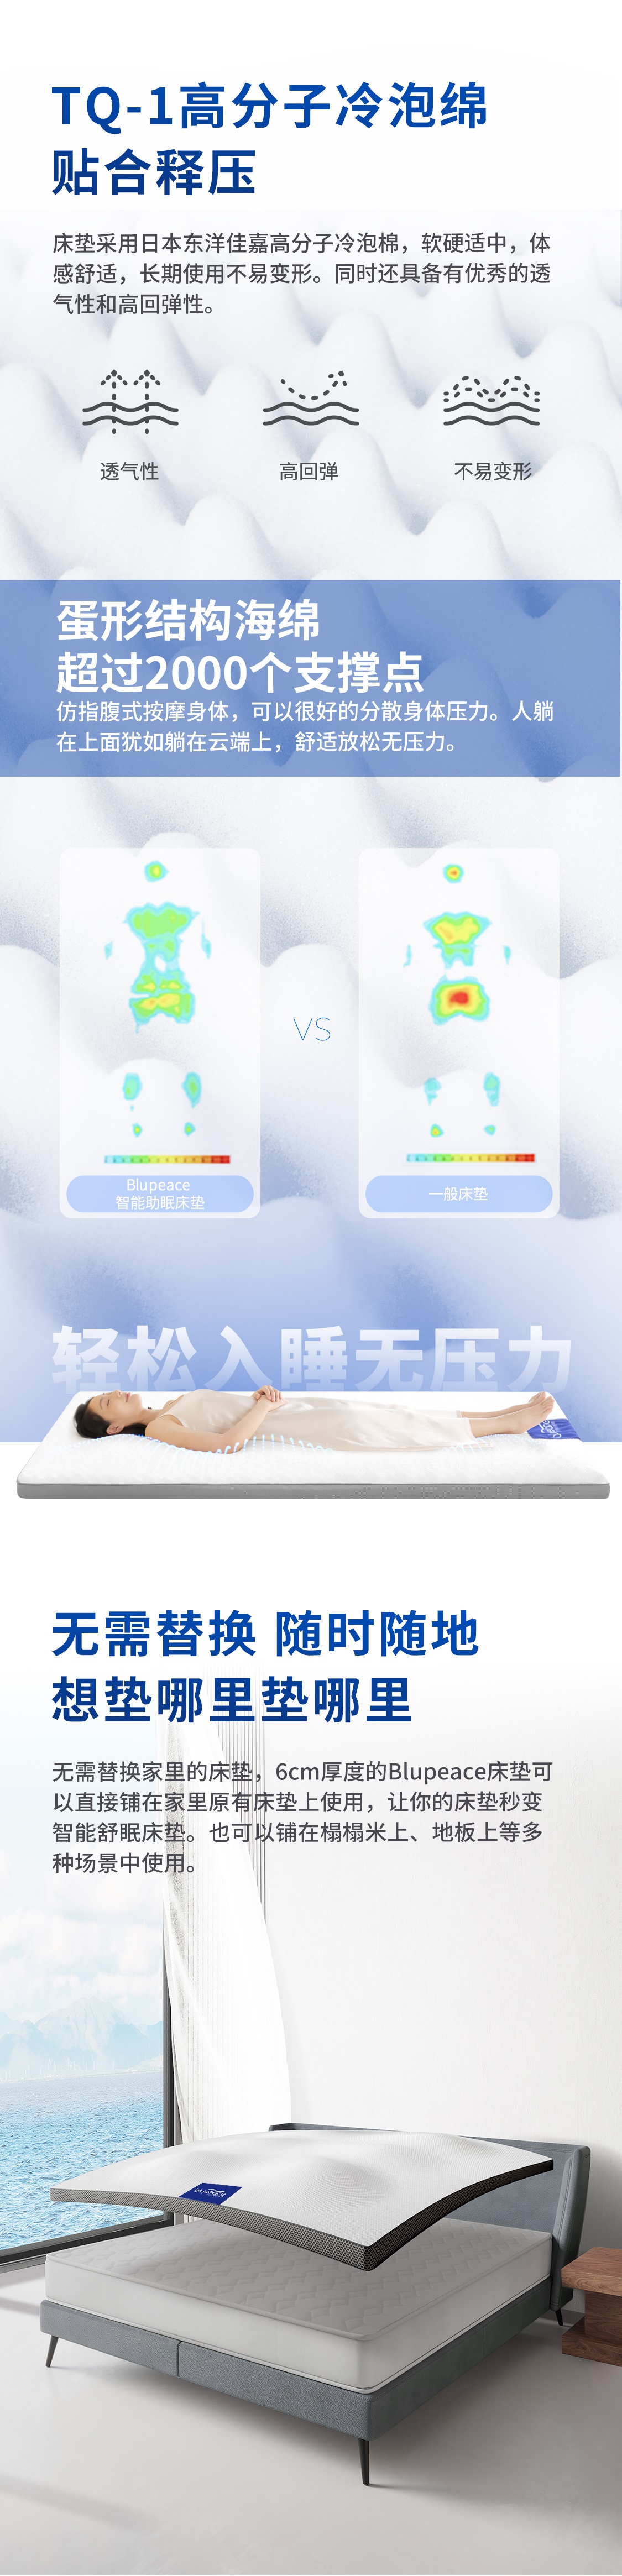 智能助眠床垫(图7)